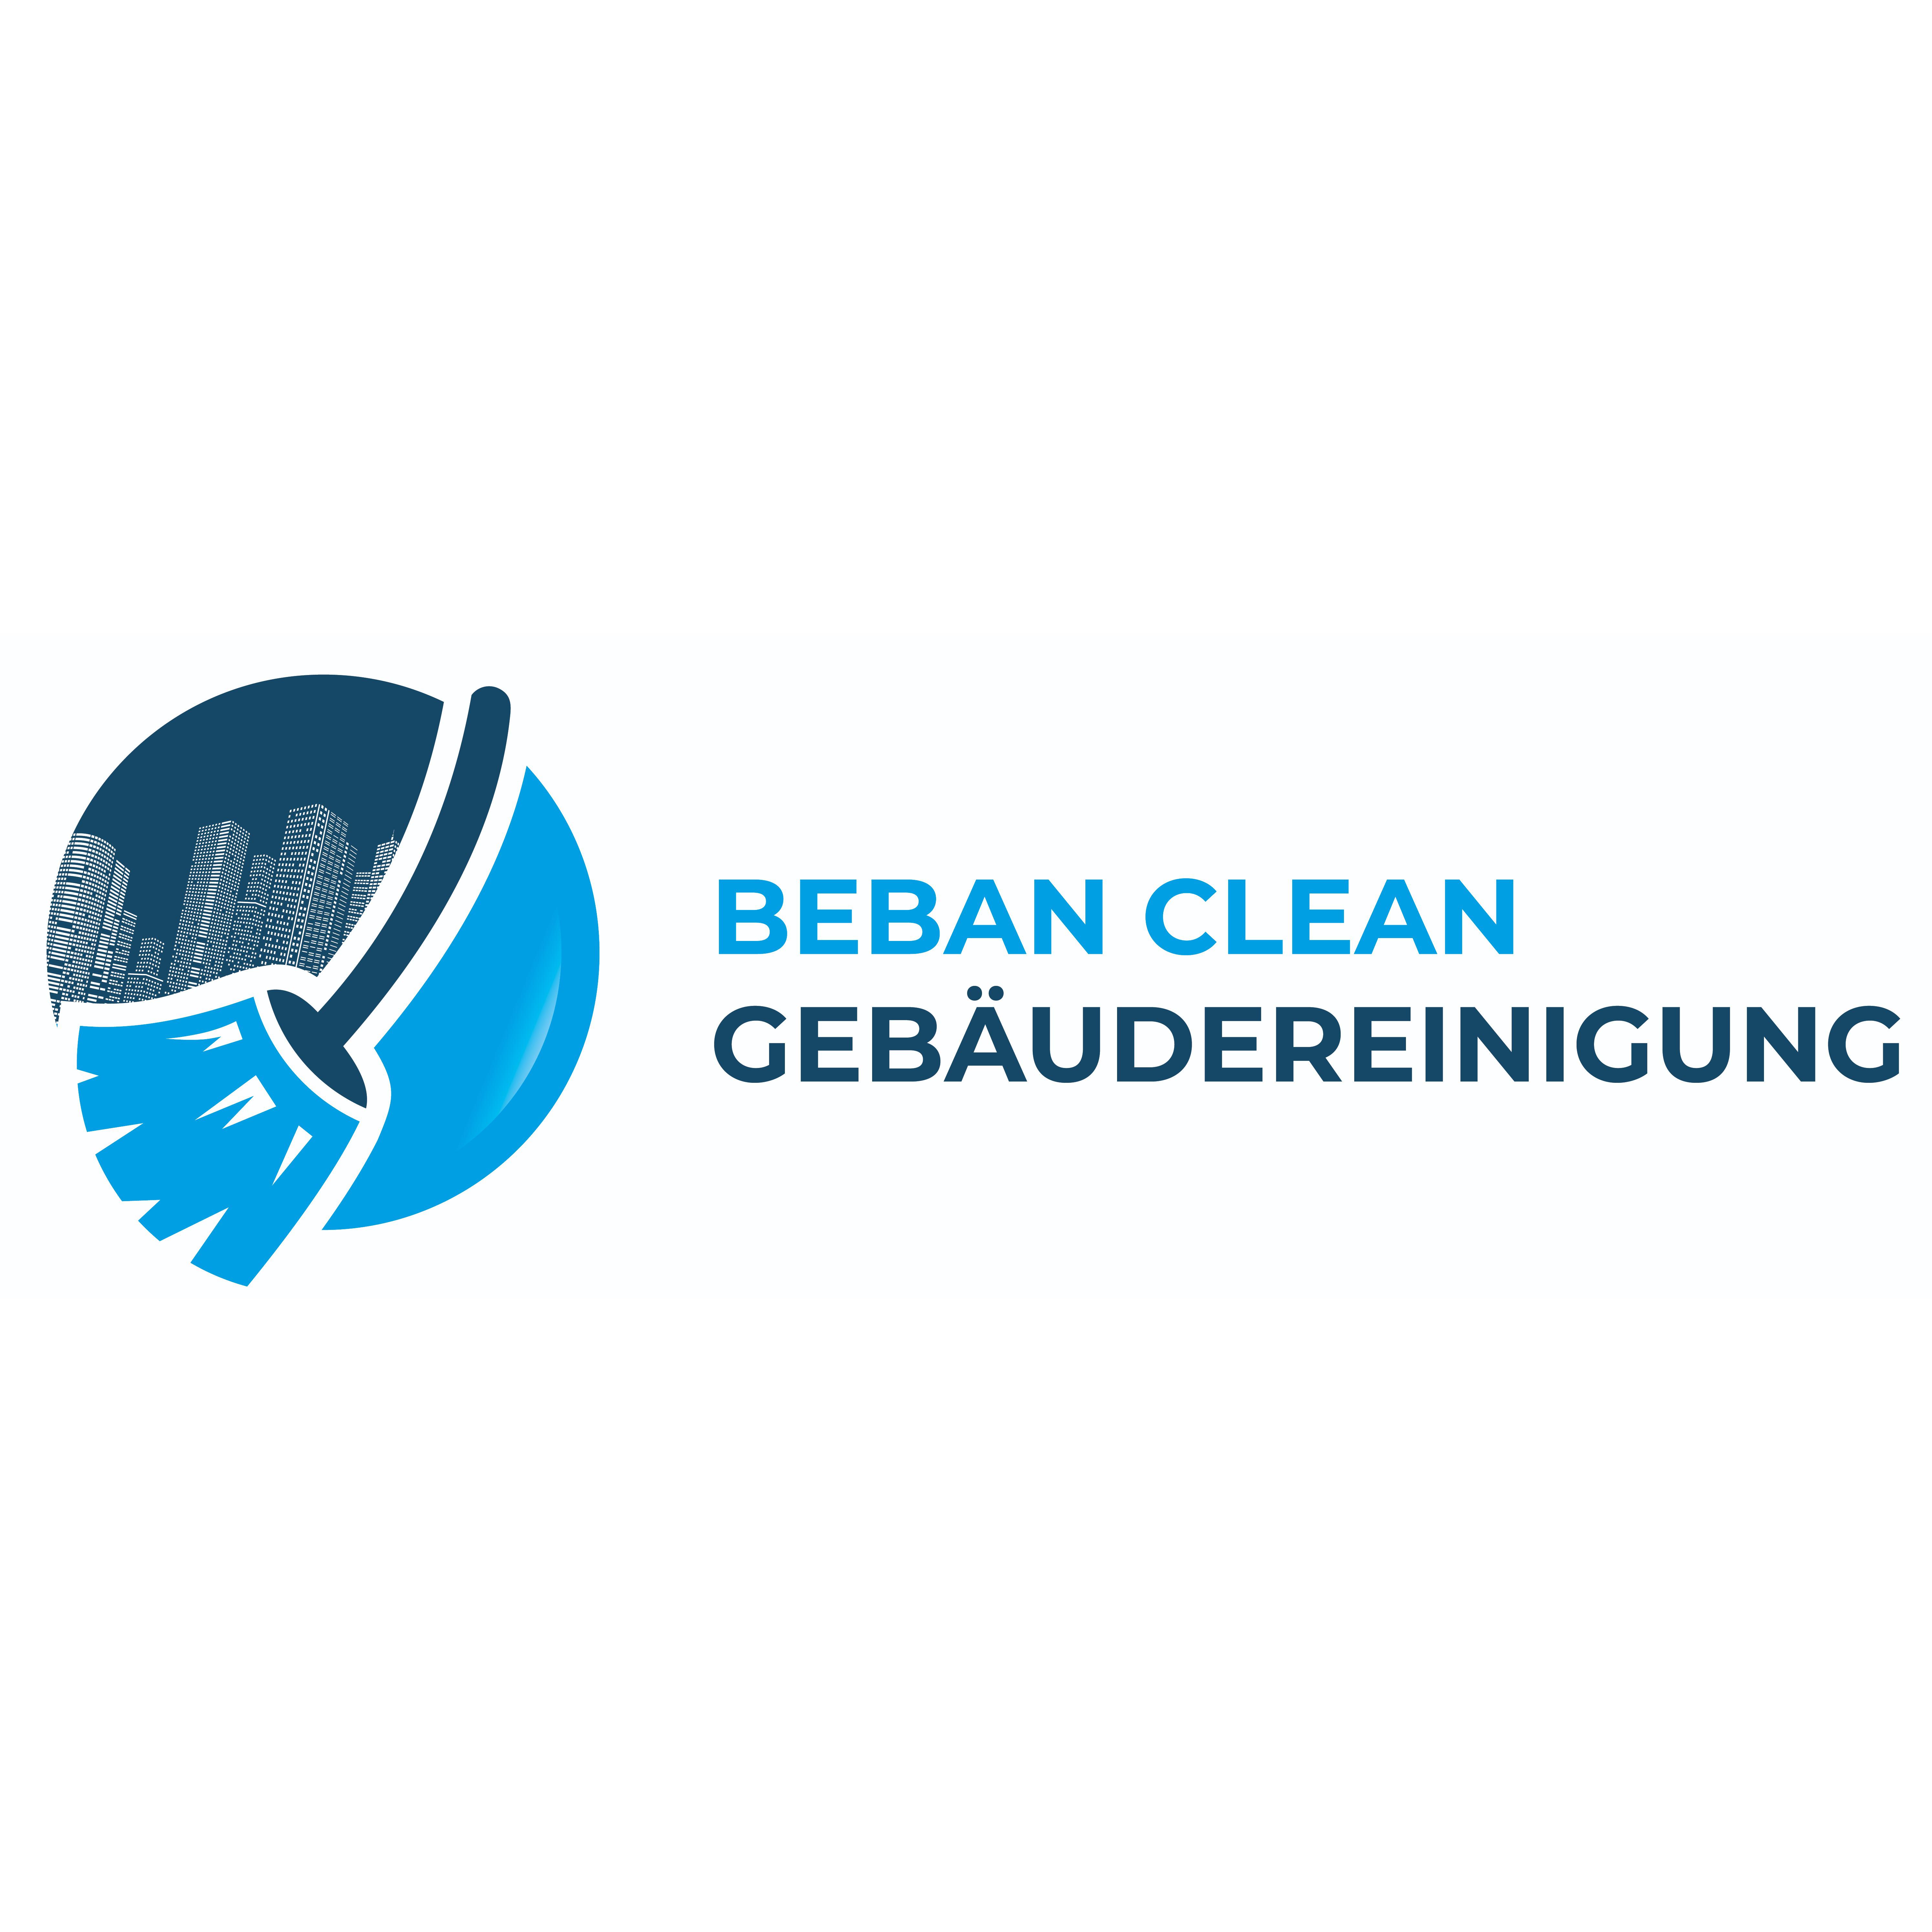 Beban Clean Gebäudereinigung in Essen - Logo